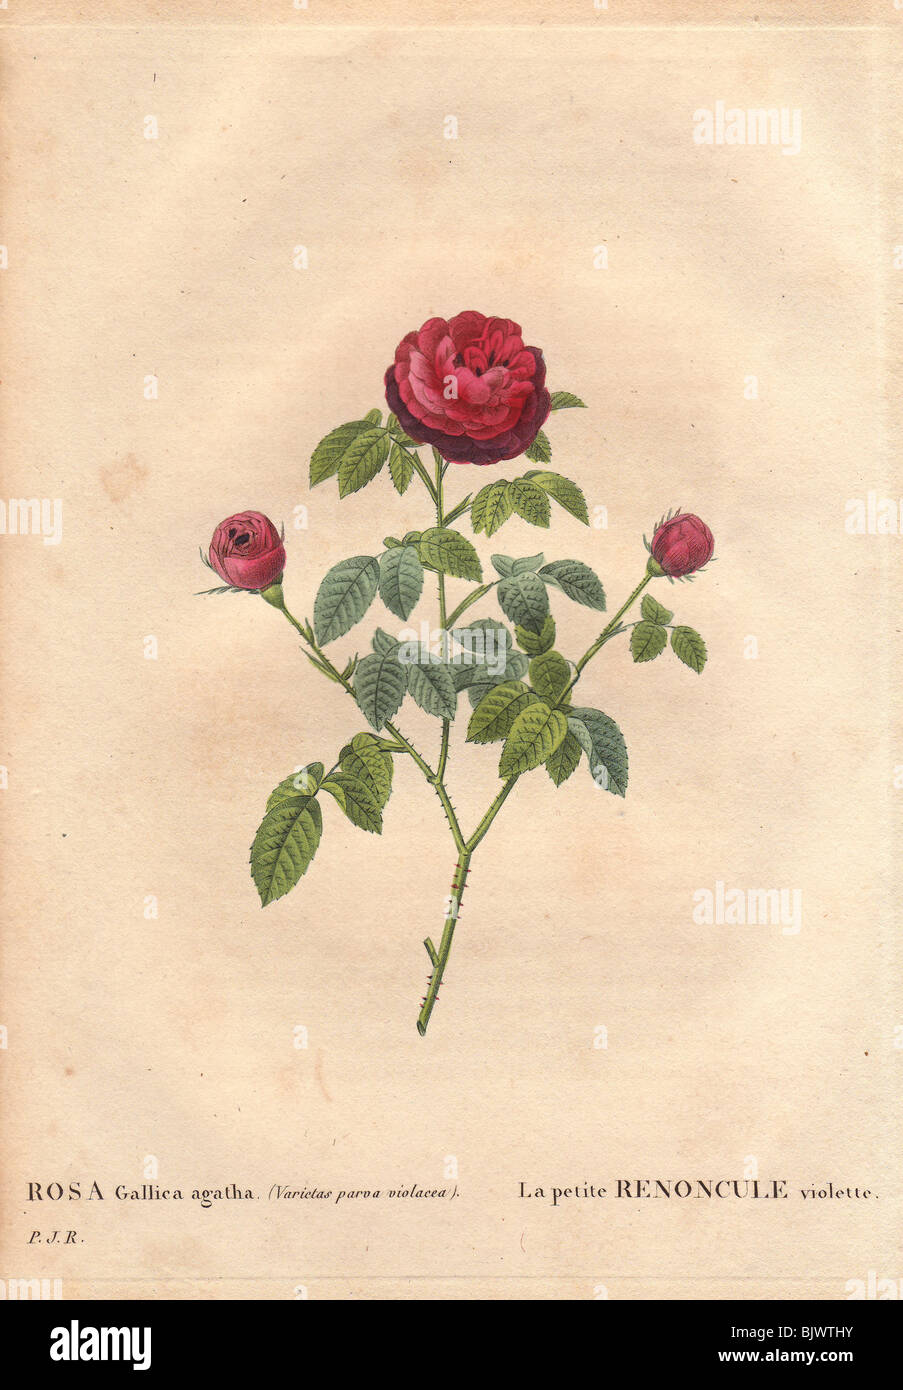 La Petite Renoncule rose with crimson and purple blooms (Rosa gallica agatha) Stock Photo